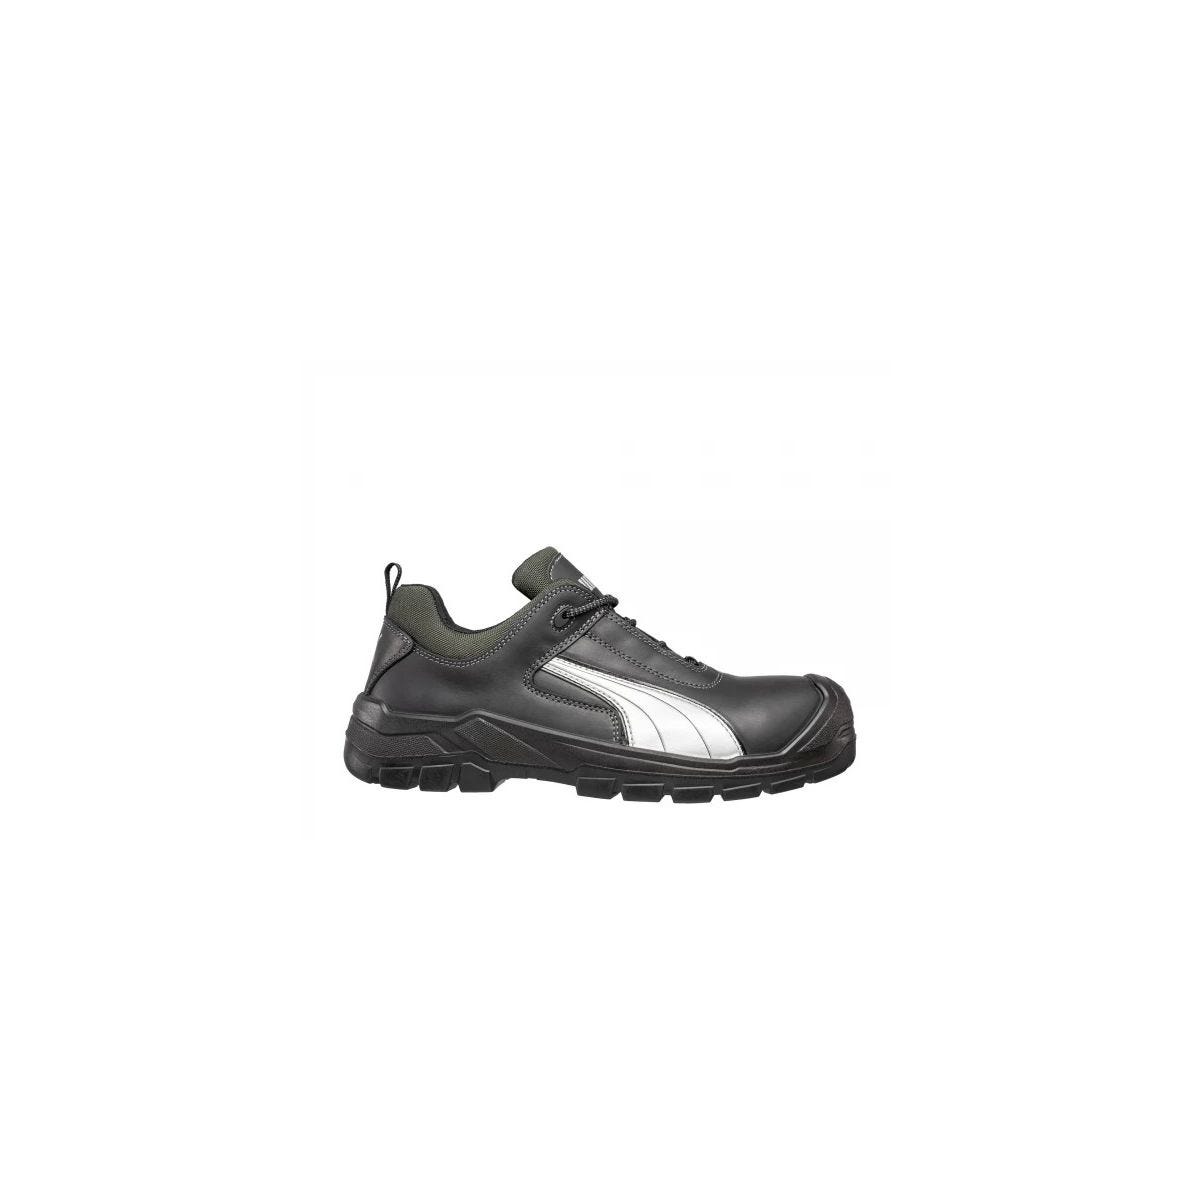 Chaussures de sécurité Cascades low S3 HRO SRC - Puma - Taille 43 0